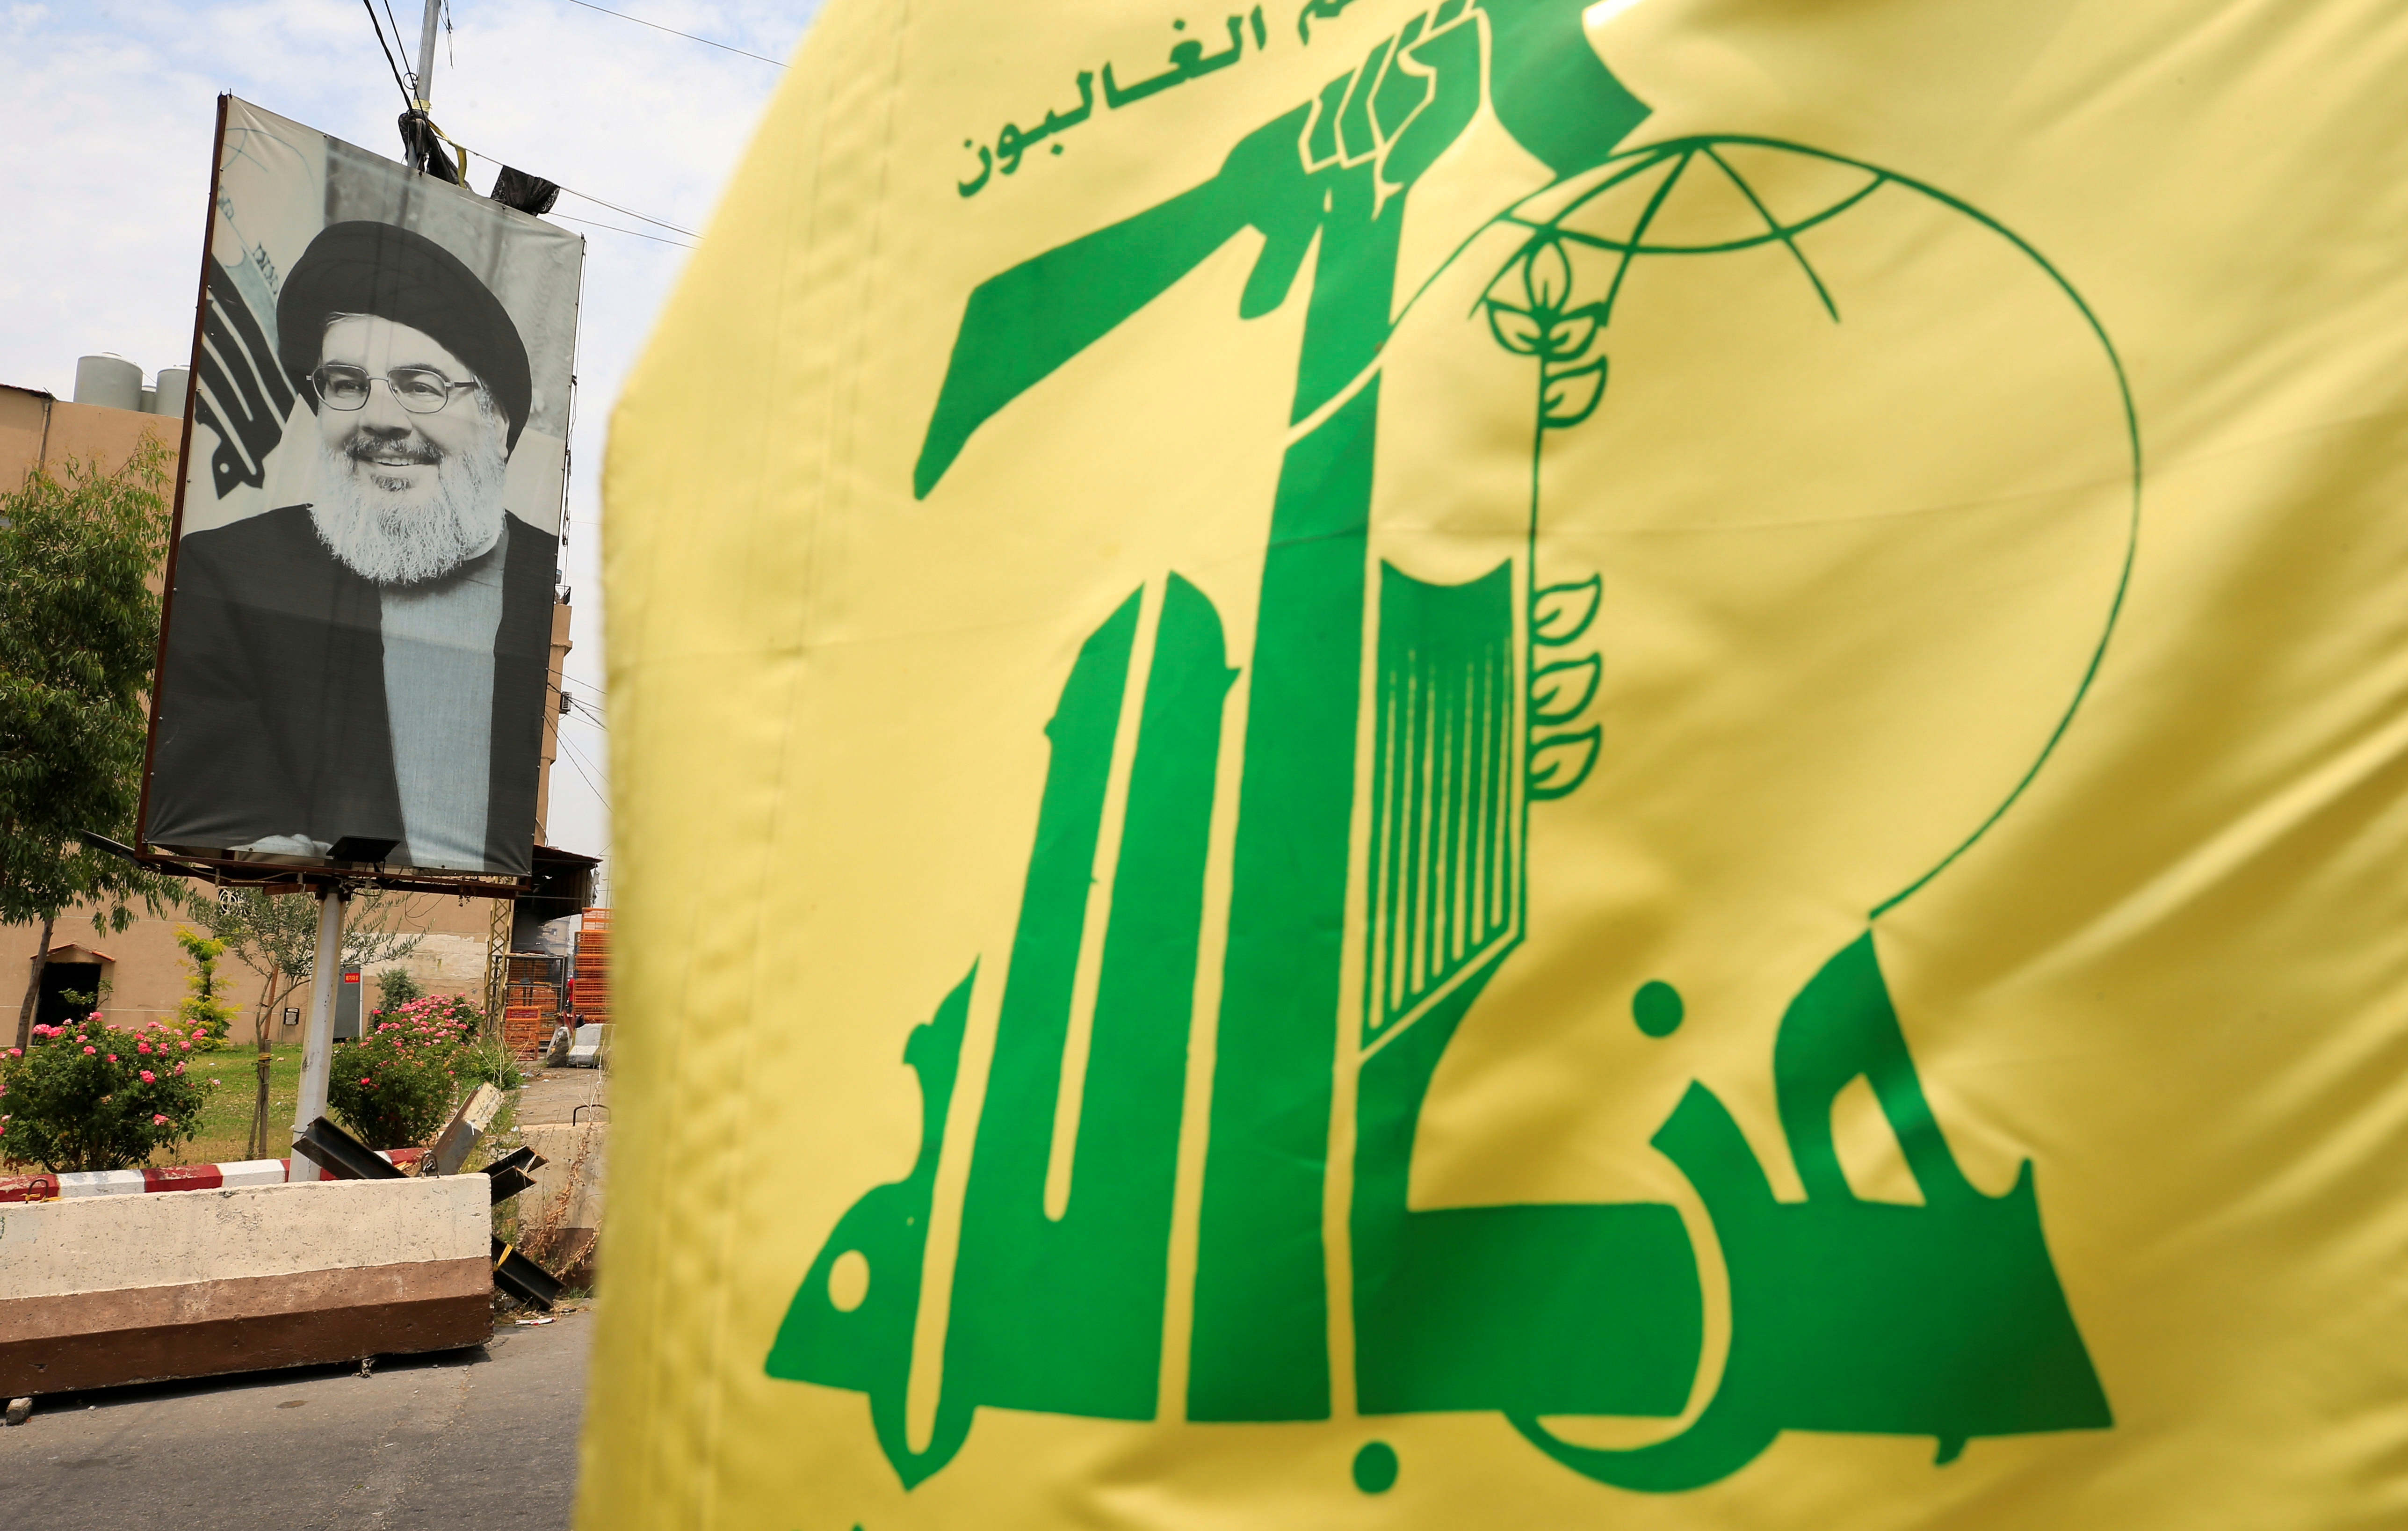 El nexo entre Hezbollah y cárteles mexicanos se ha investigado desde 2009 (Foto: REUTERS/Ali Hashisho)